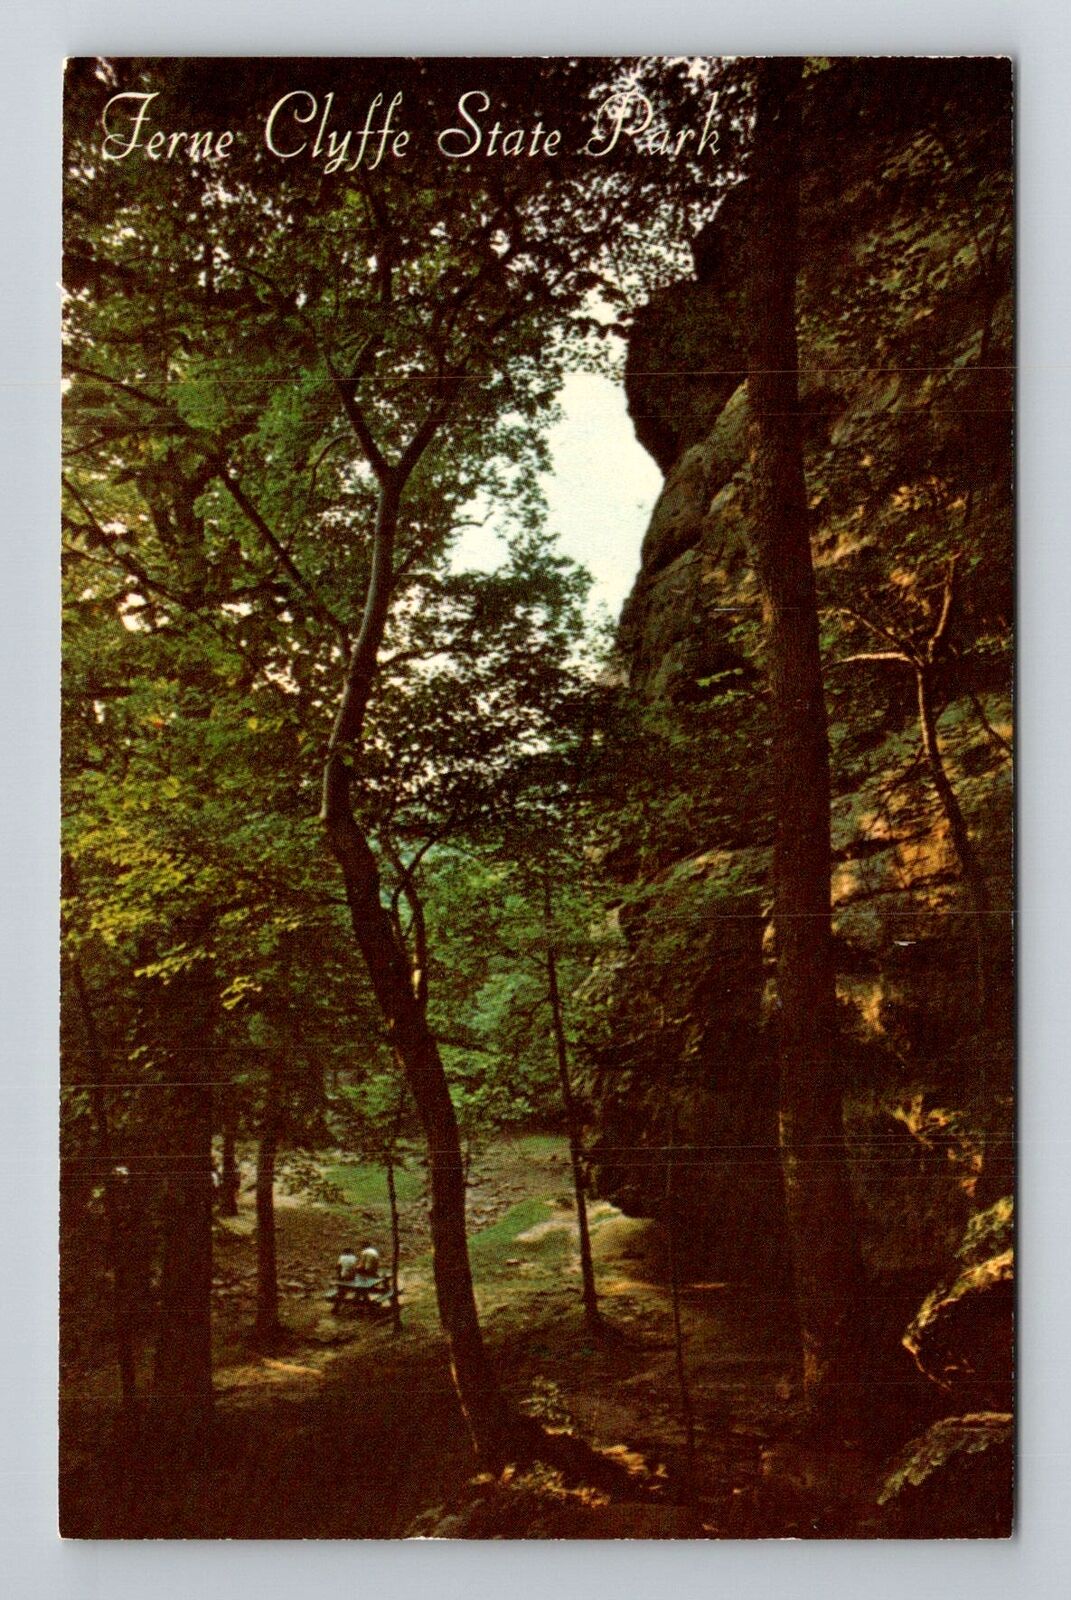 Goreville IL-Illinois, Ferne Clyffe State Park, Antique Vintage Postcard